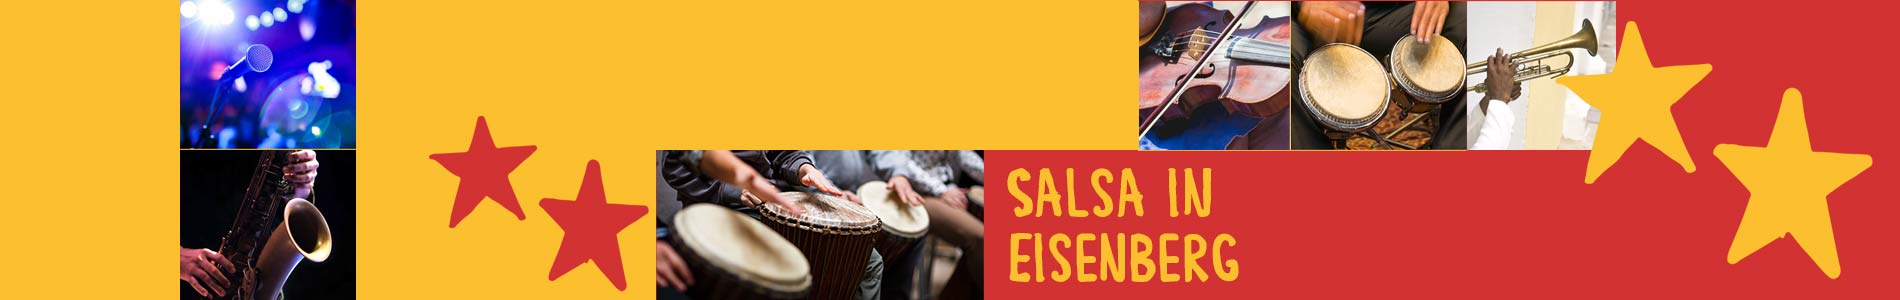 Salsa in Eisenberg – Salsa lernen und tanzen, Tanzkurse, Partys, Veranstaltungen